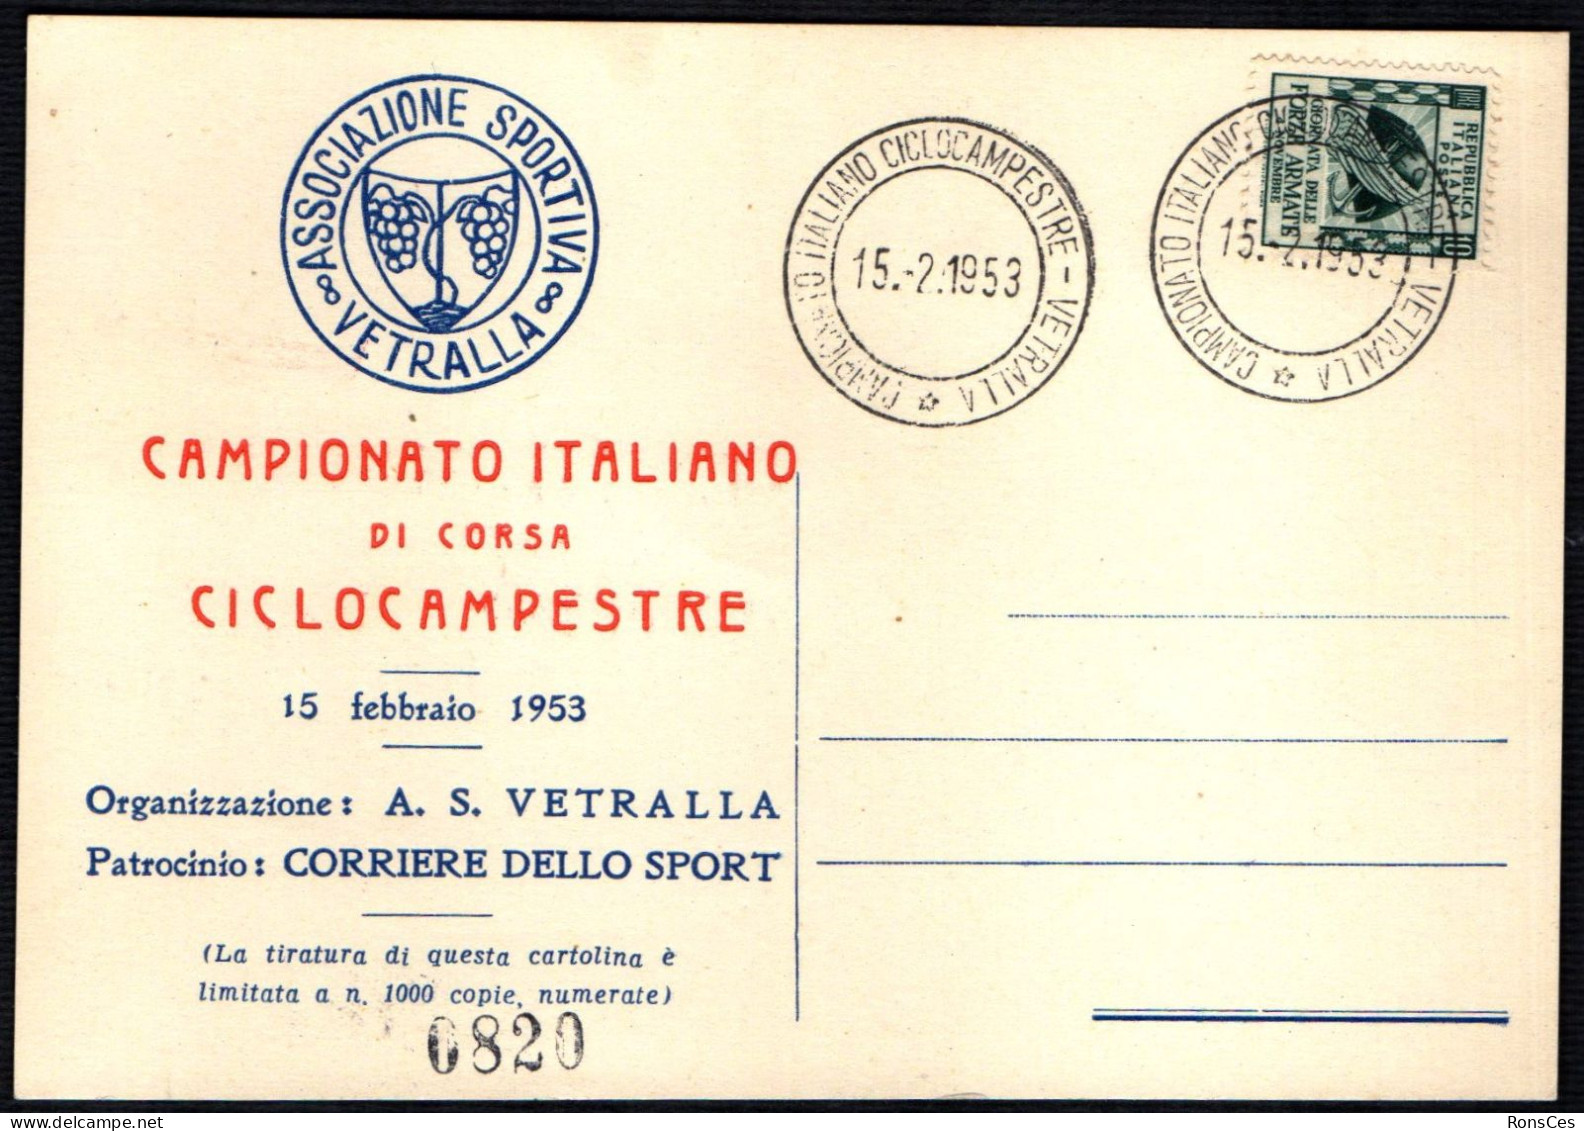 CYCLING - ITALIA VETRALLA 1953 - CAMPIONATO ITALIANO DI CORSA CICLOCAMPESTRE - A - Cyclisme